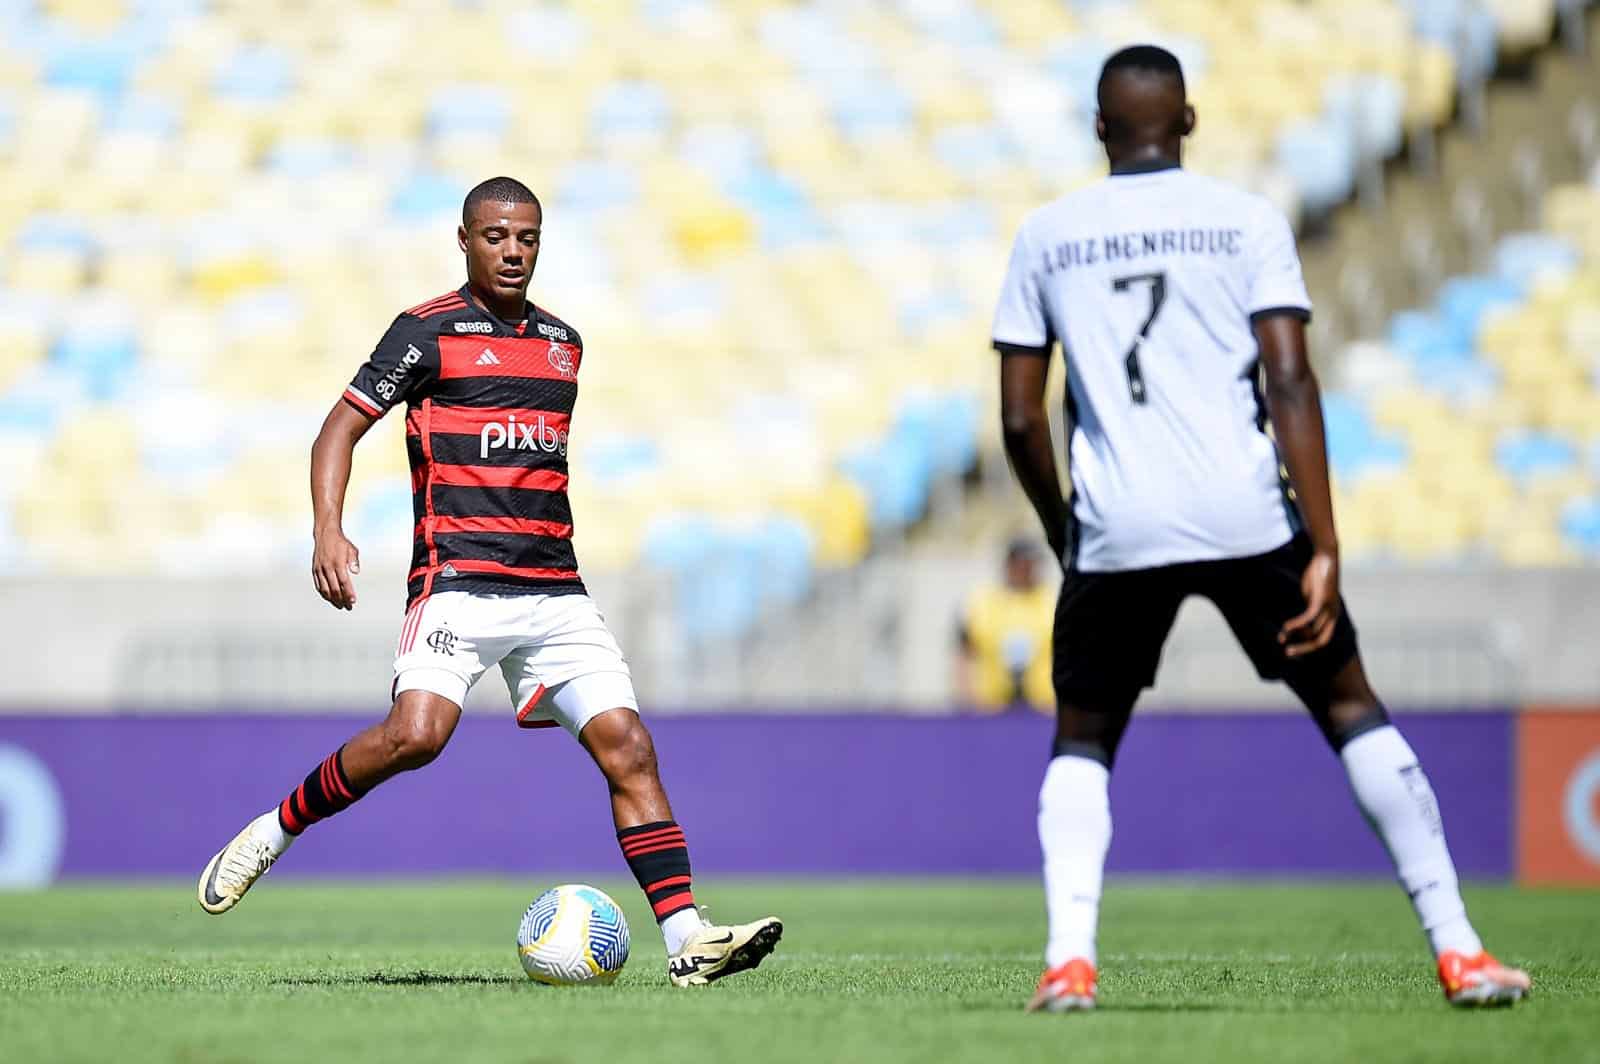 Modorra do Flamengo supera até o ardor em rota justa para o Botafogo